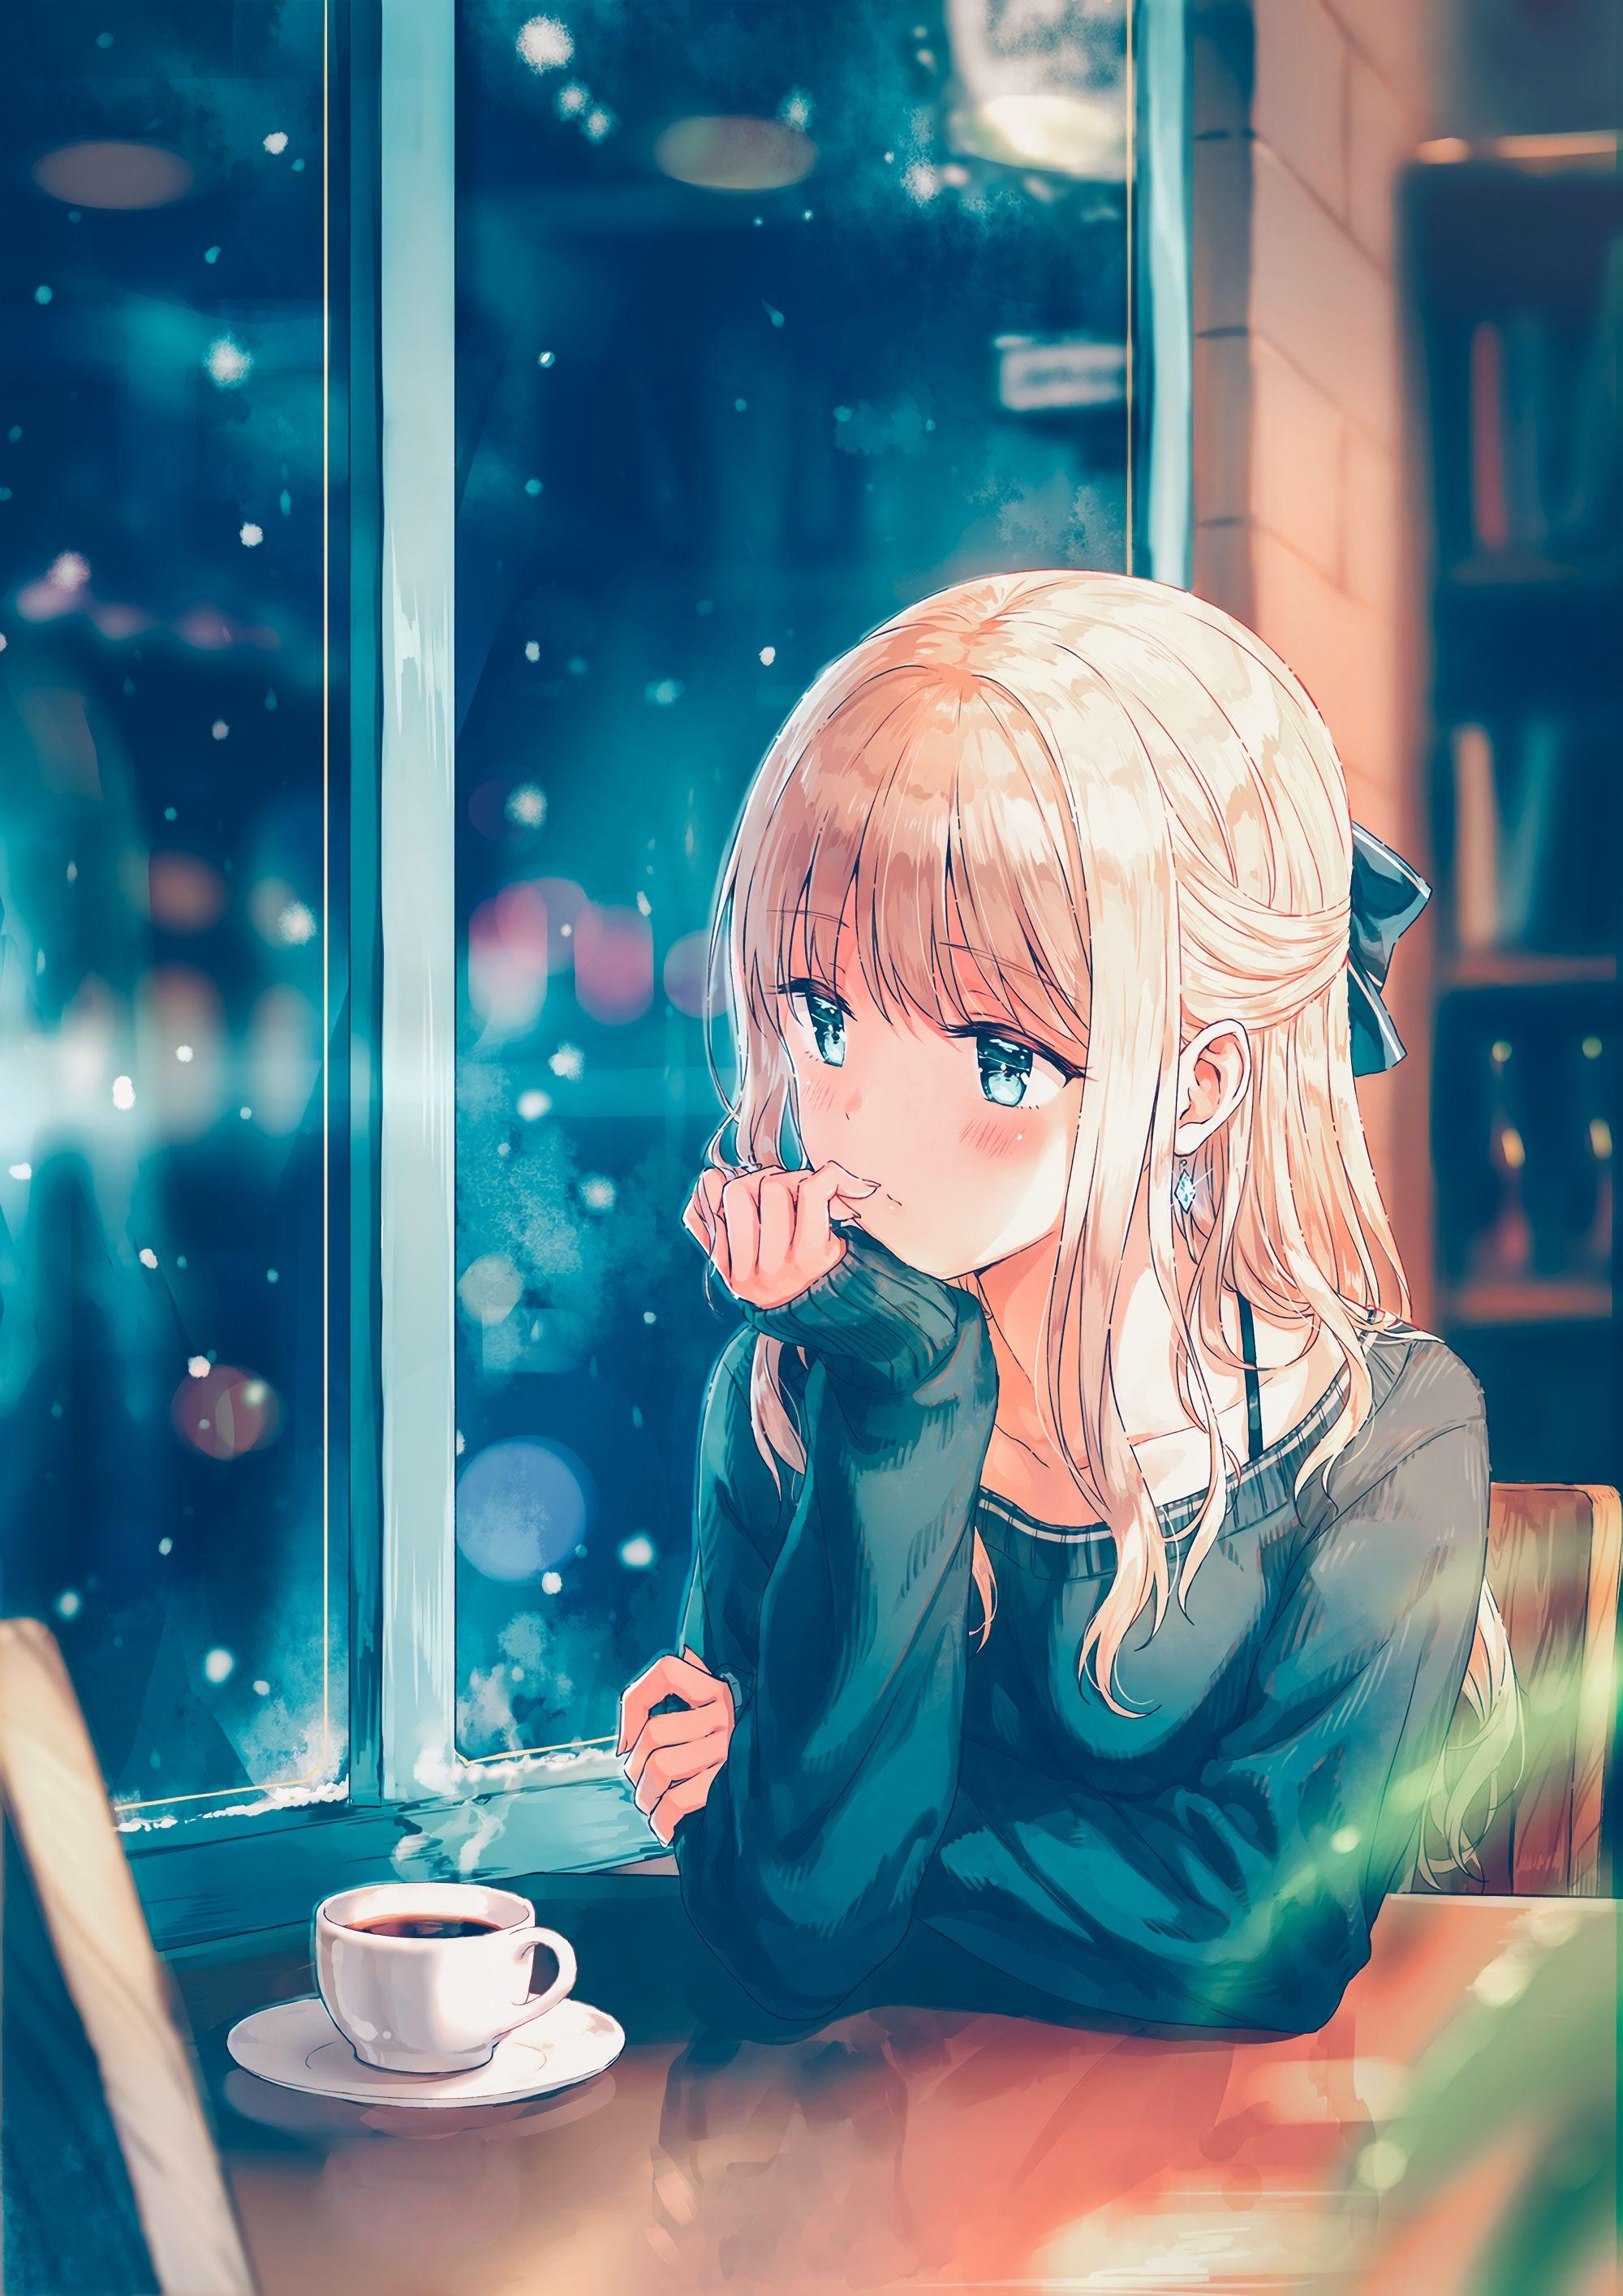 Cute Wallpaper Anime - KibrisPDR